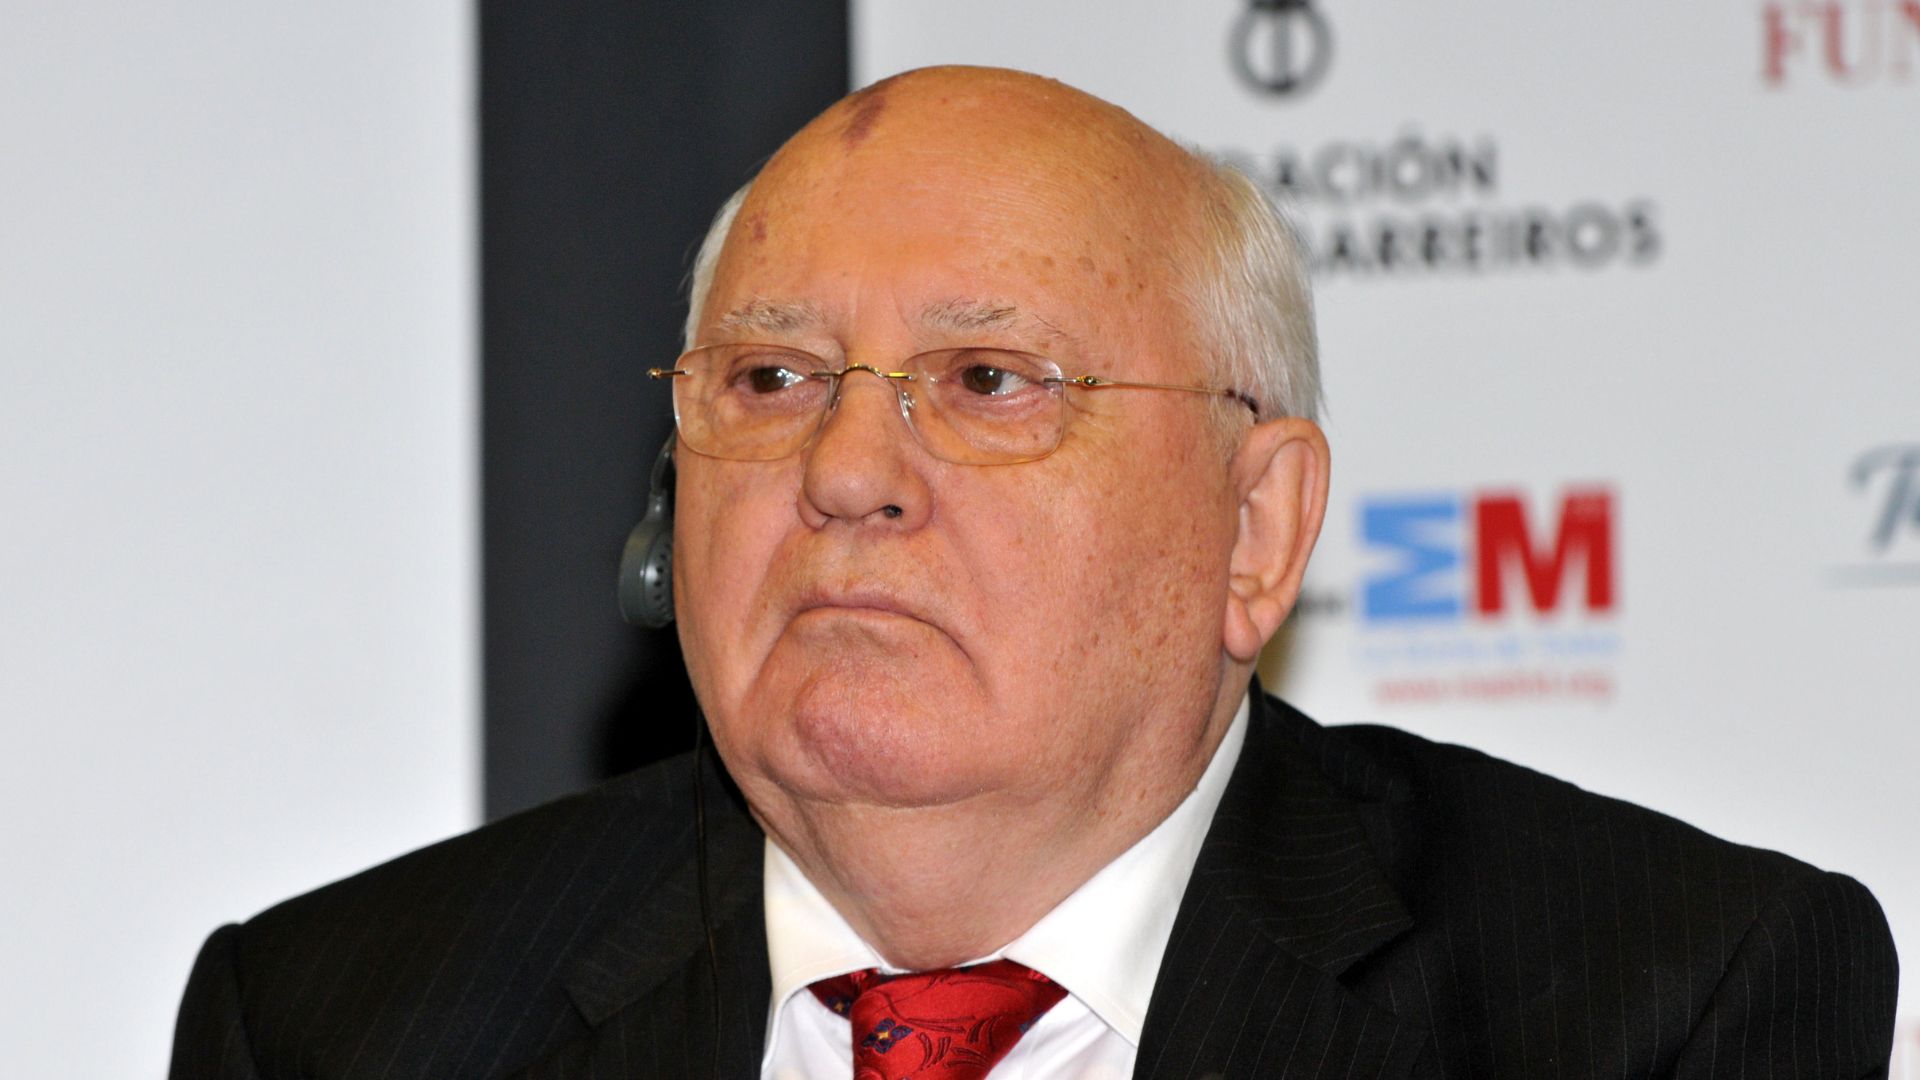 Mijail Gorbachov